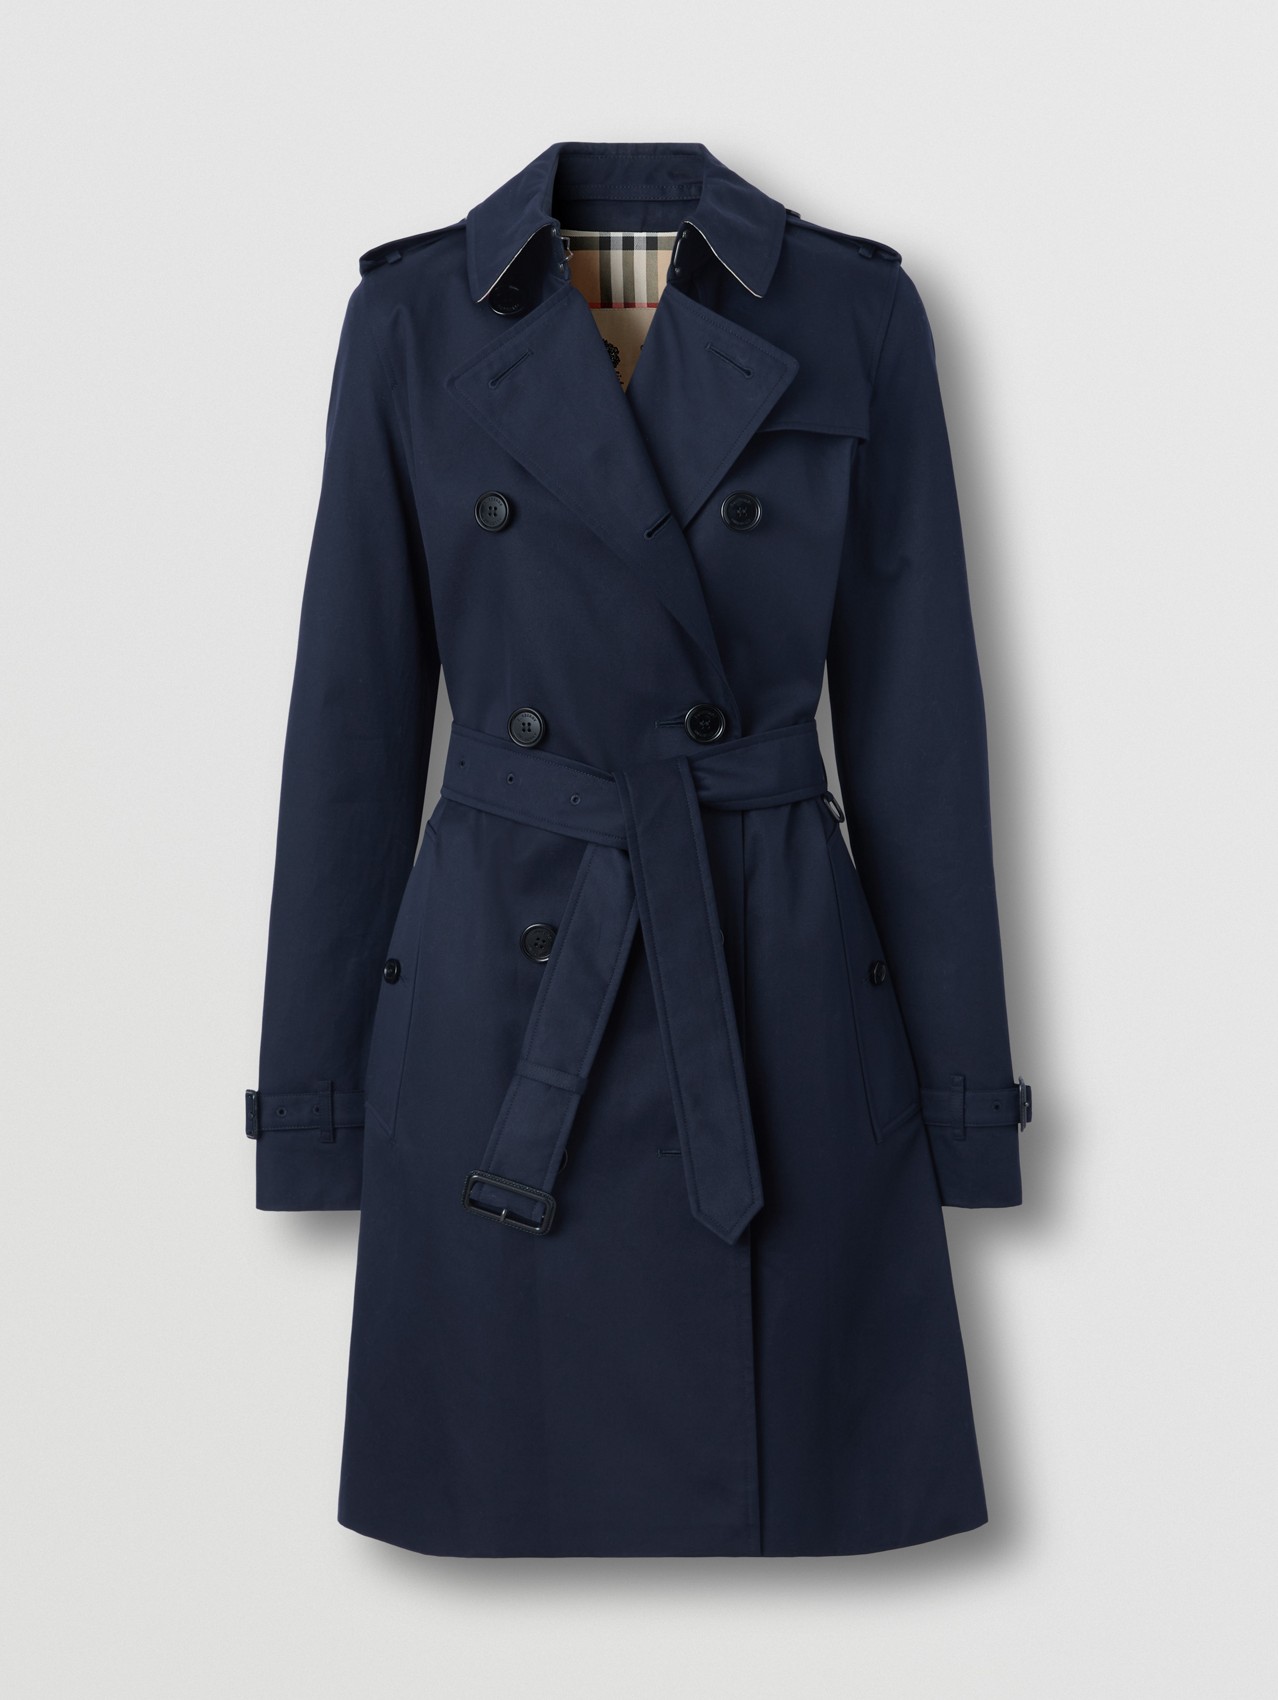 discount 57% WOMEN FASHION Coats Trench coat Waterproof Jacqueline de Yong Trench coat Green S 